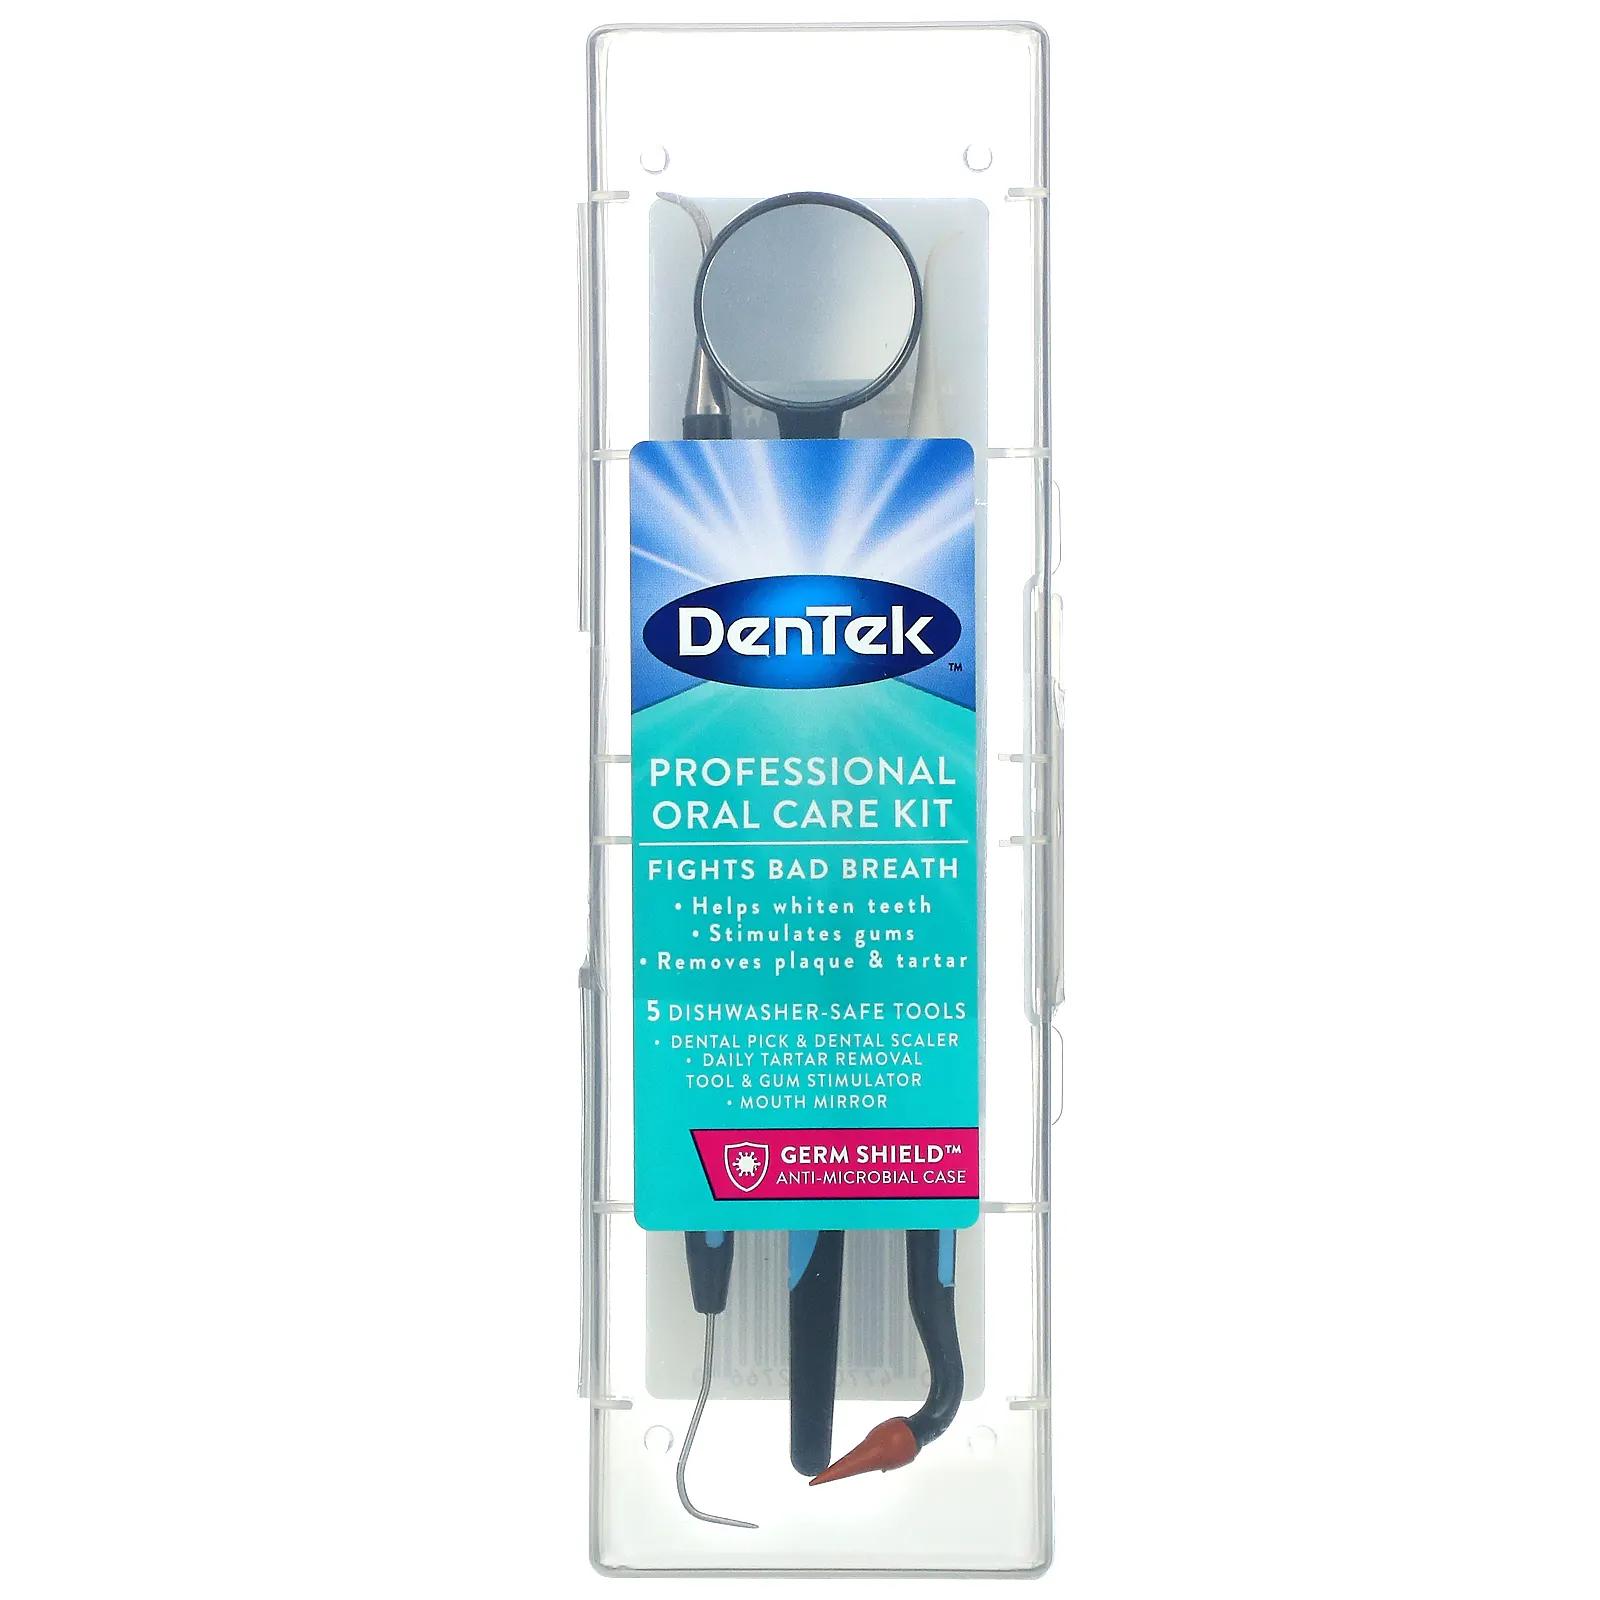 DenTek Профессиональный набор для ухода за полостью рта 1 комплект dentek профессиональная зубная защита 1 единица